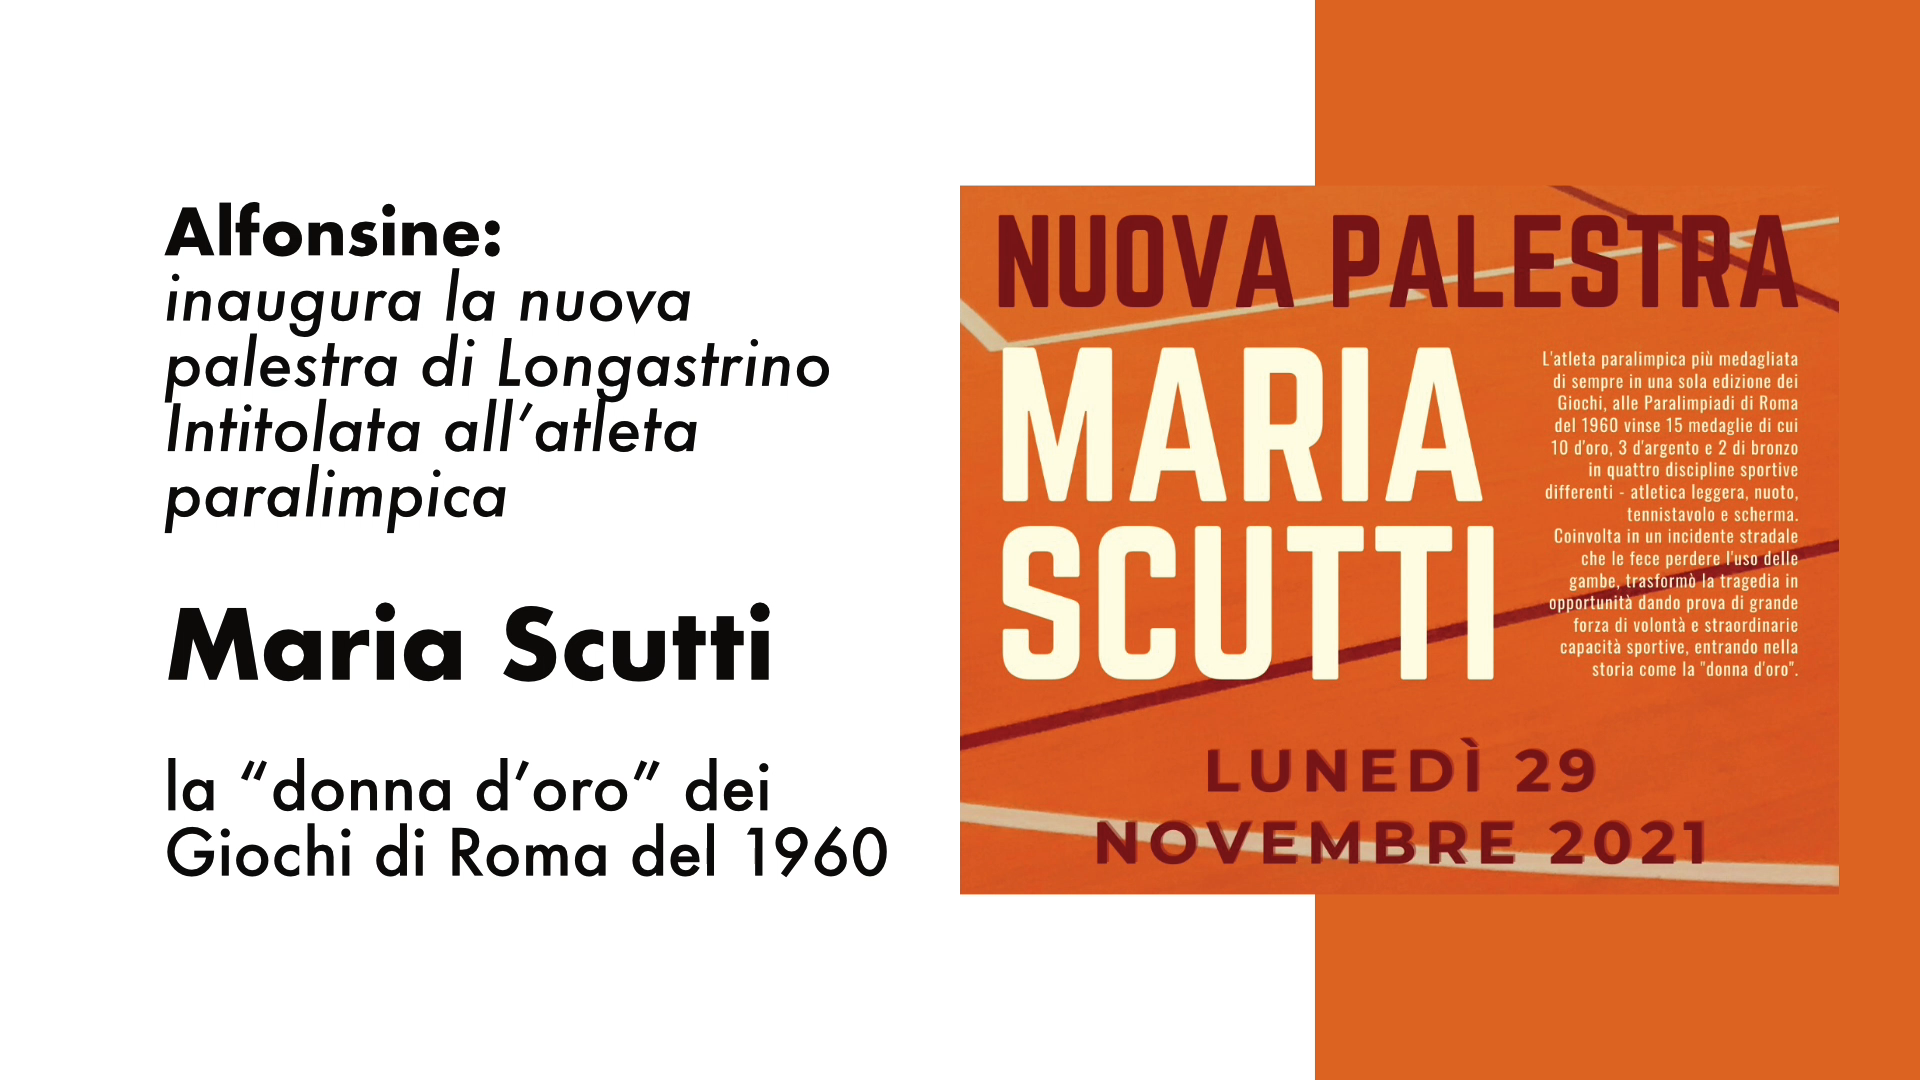 Inaugurazione nuova Palestra a Longastrino intitolata a: MARIA SCUTTI la “donna d’oro” dei Giochi di Roma 1960